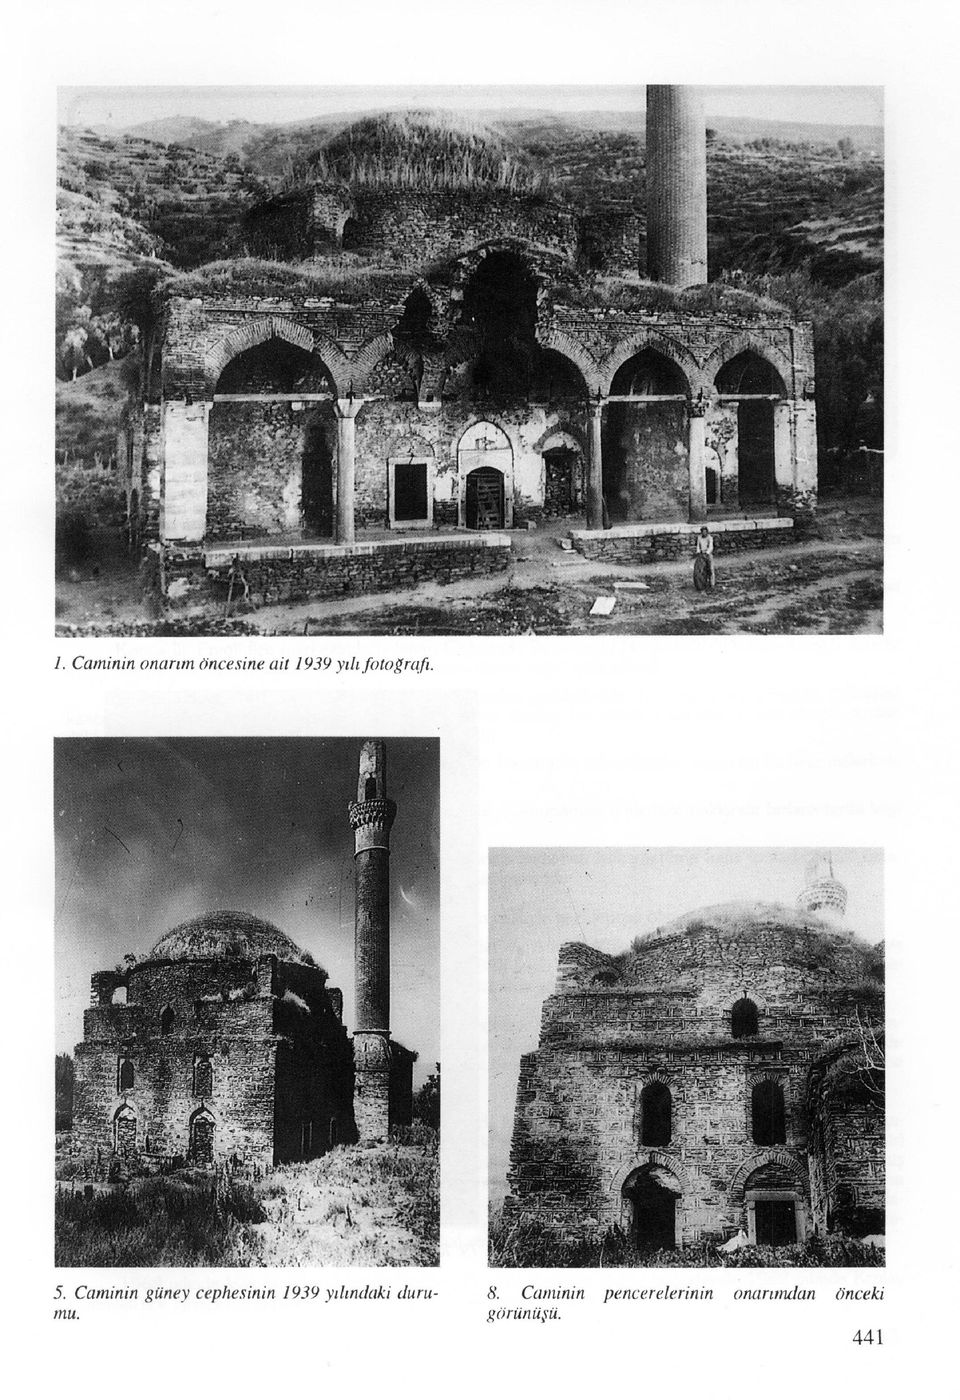 Caminin güney cephesinin 1939